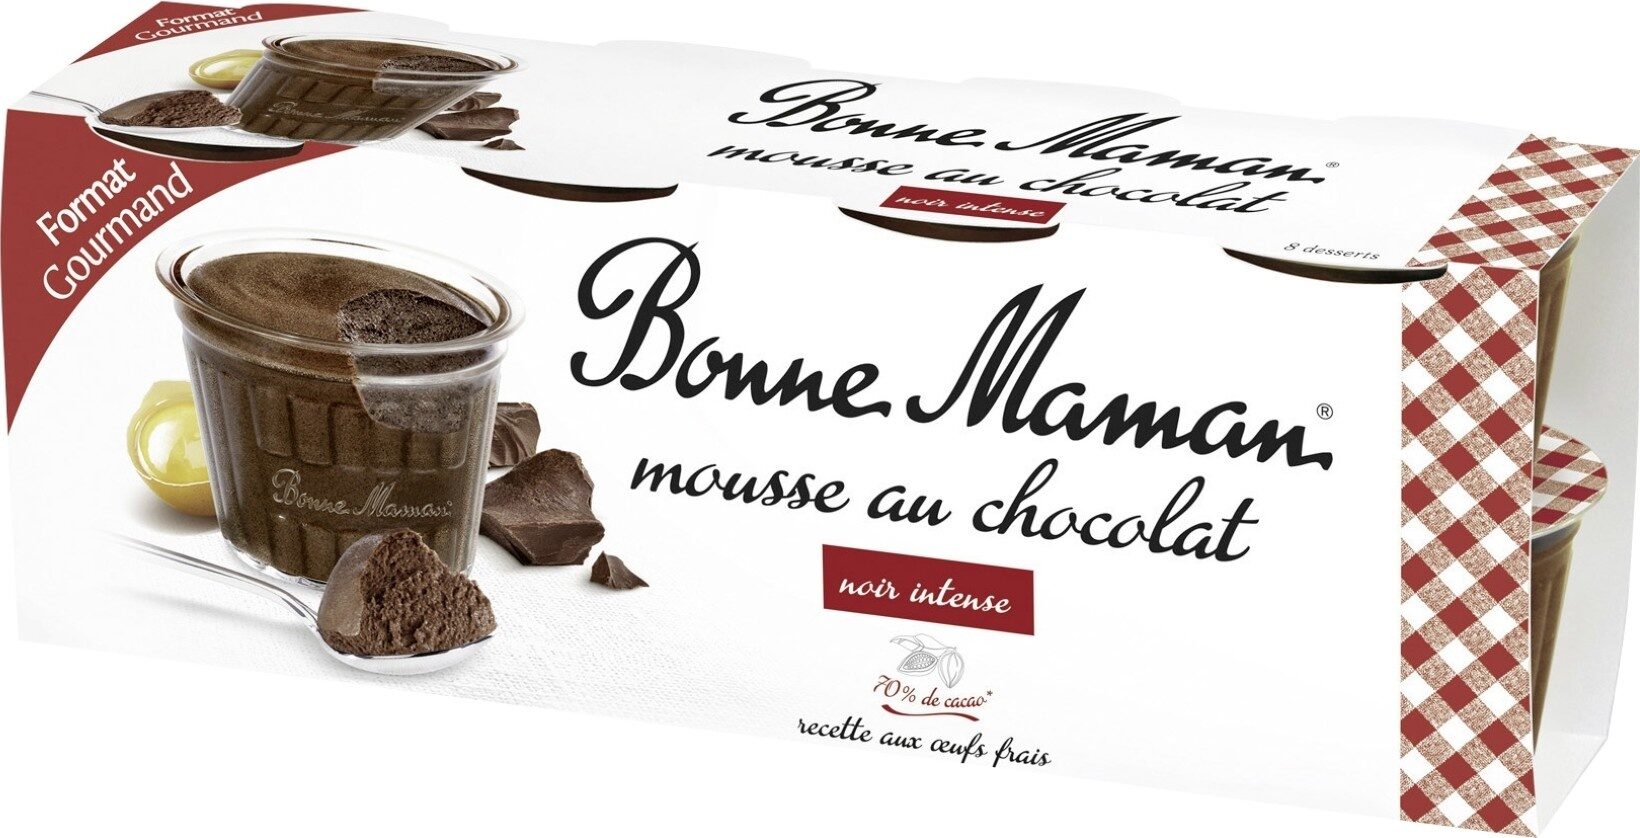 Mousse chocolat noir intense - Product - fr